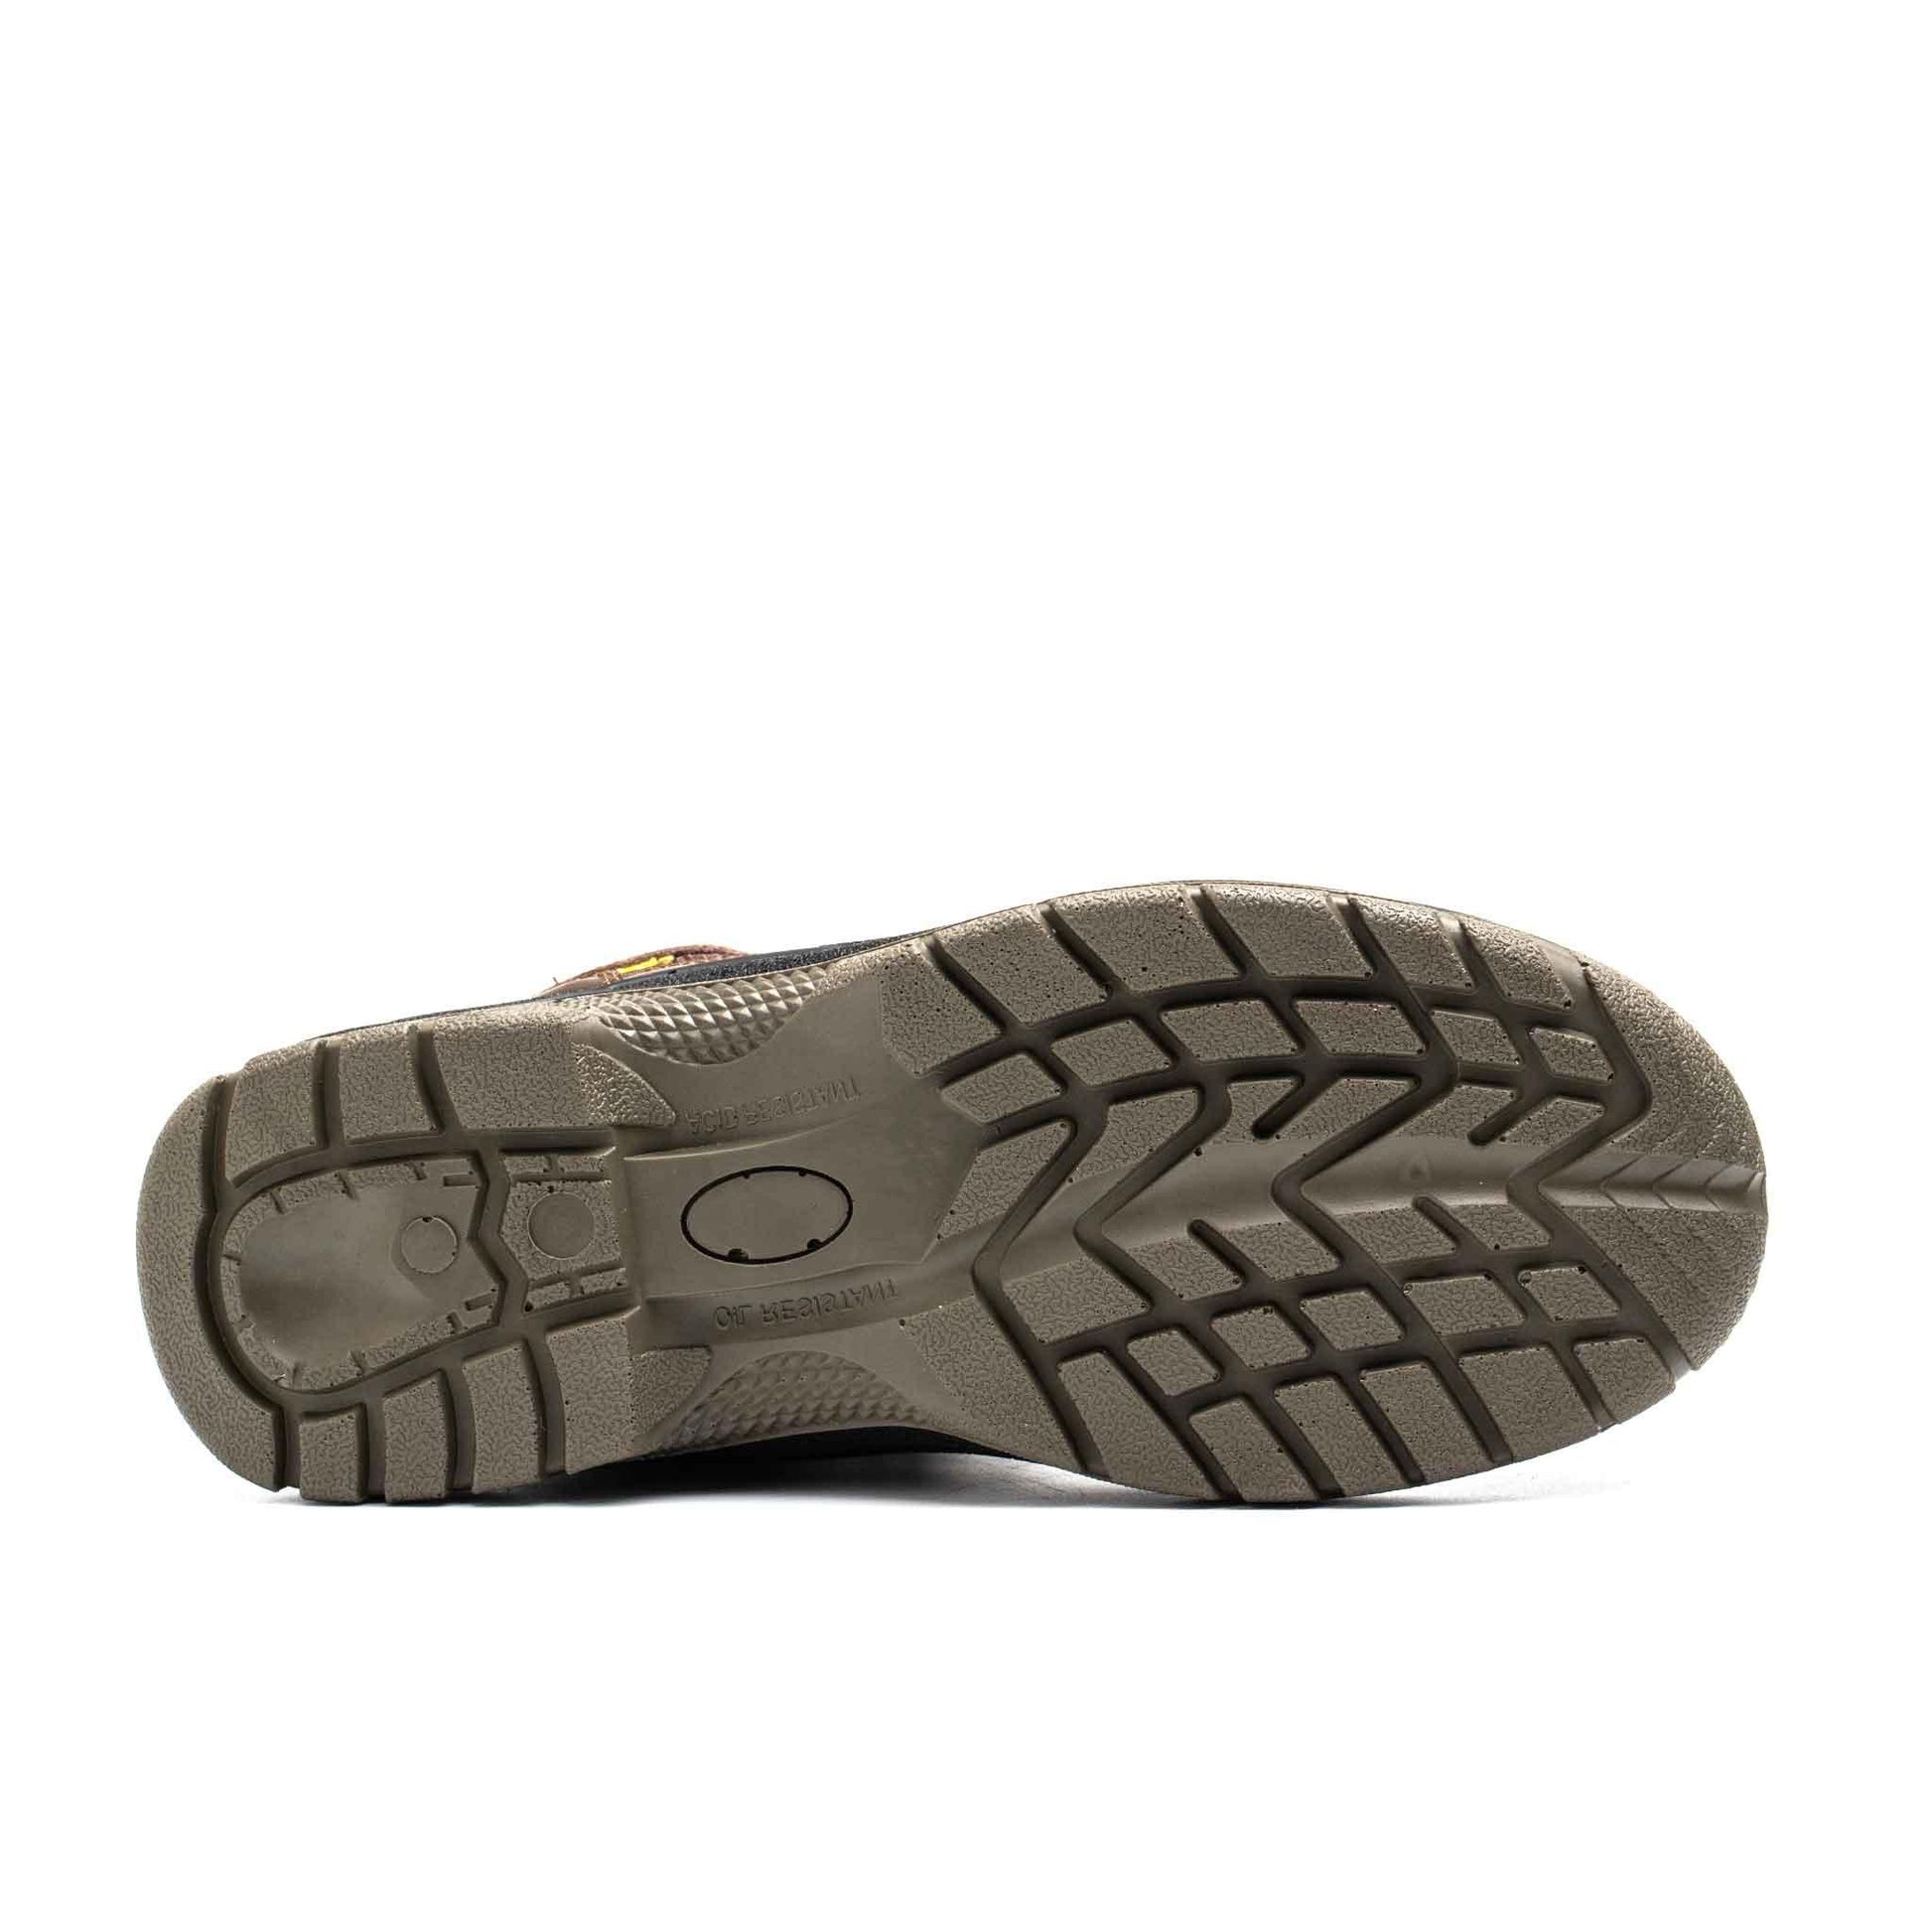 Women's Steel Toe Work Boot - Waterproof | B199 - USINE PRO Footwear